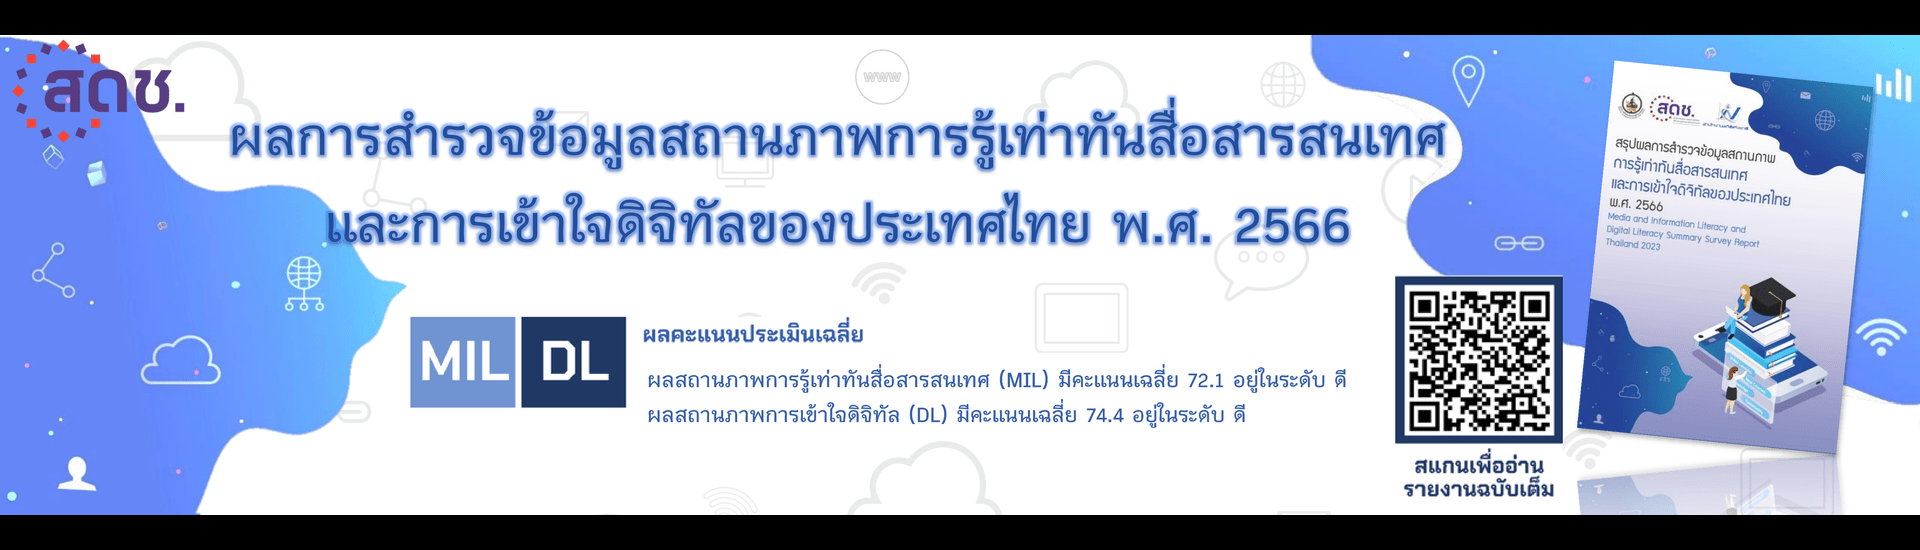 การสำรวจและจัดทำดัชนีตัวชี้วัดด้านการพัฒนาดิจิทัลของประเทศไทย ปี 2566 (Thailand Digital Outlook 2023)